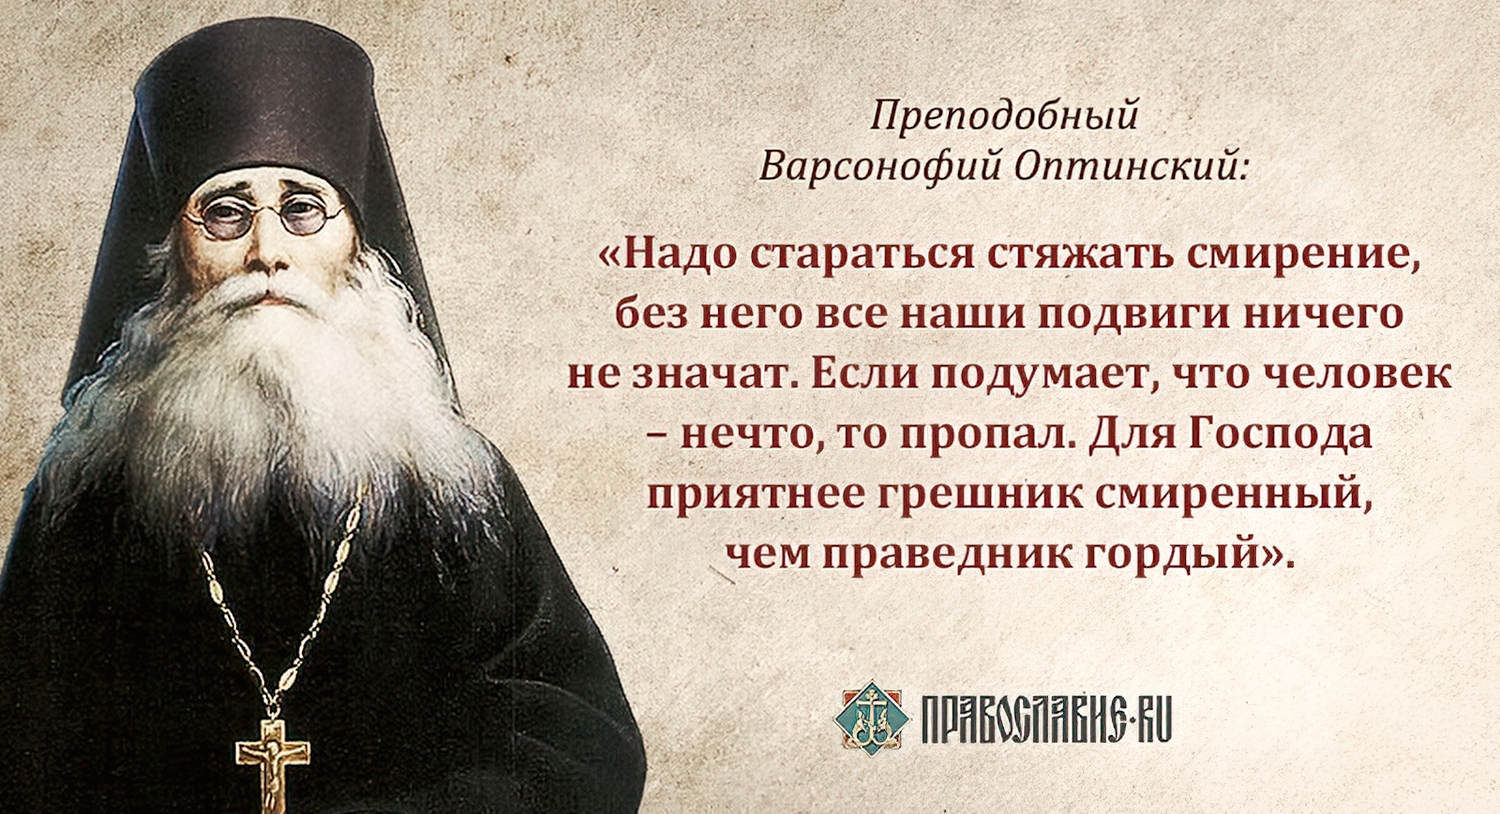 Какую награду получил писатель от православной церкви